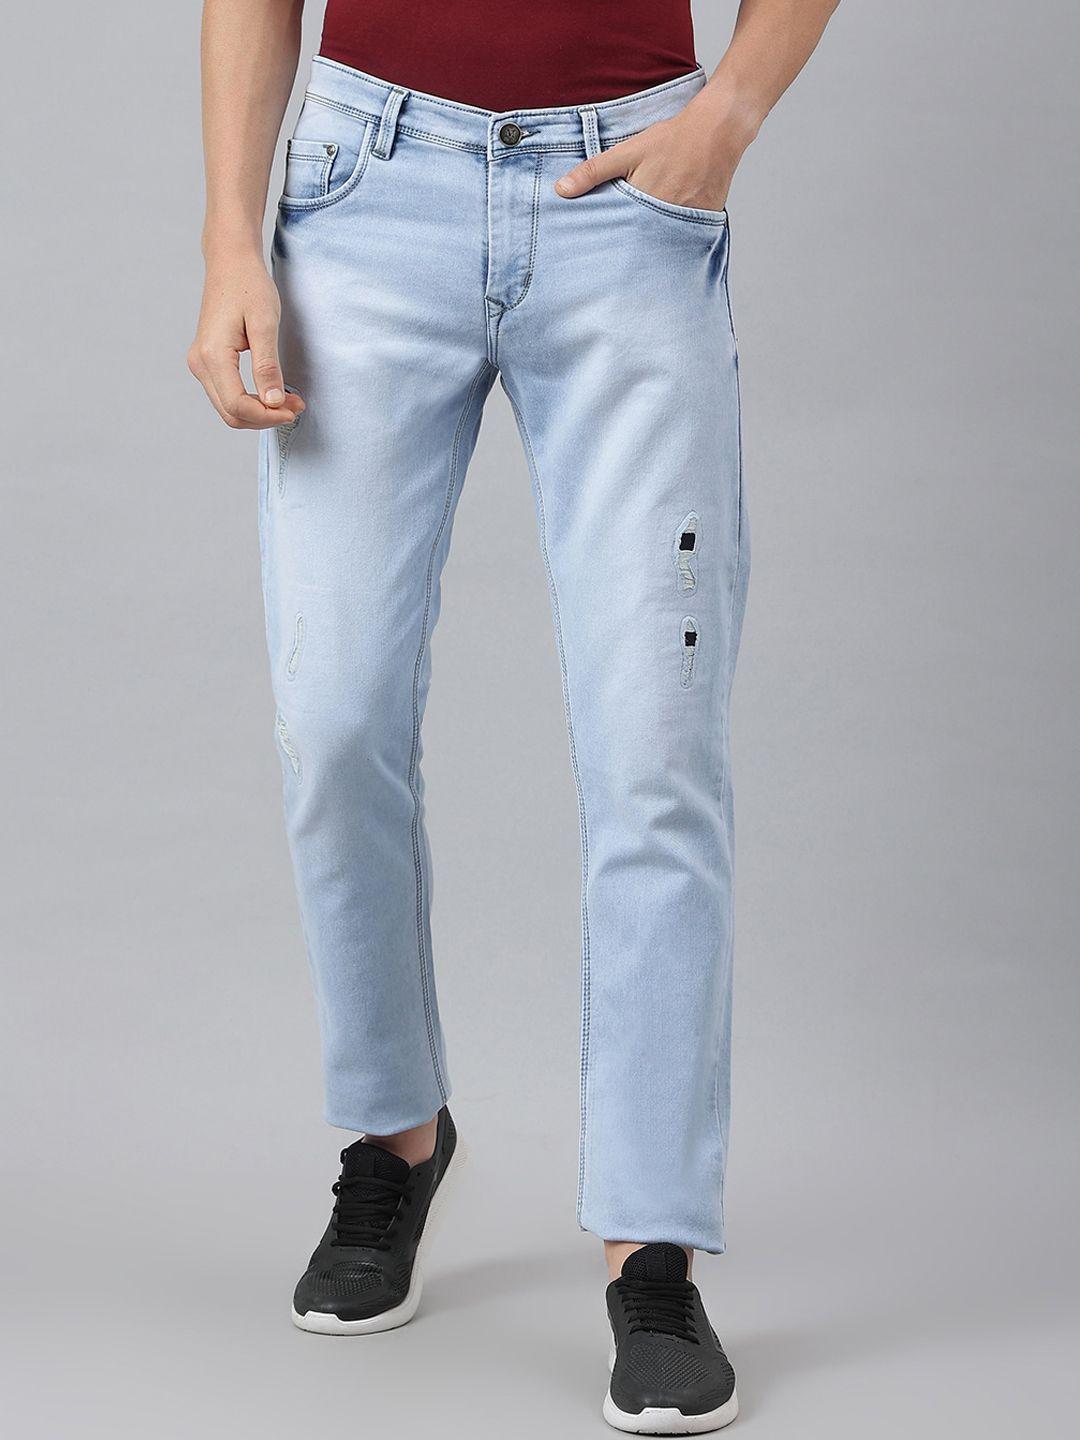 mr-button-men-blue-slim-fit-low-distress-heavy-fade-cotton-jeans